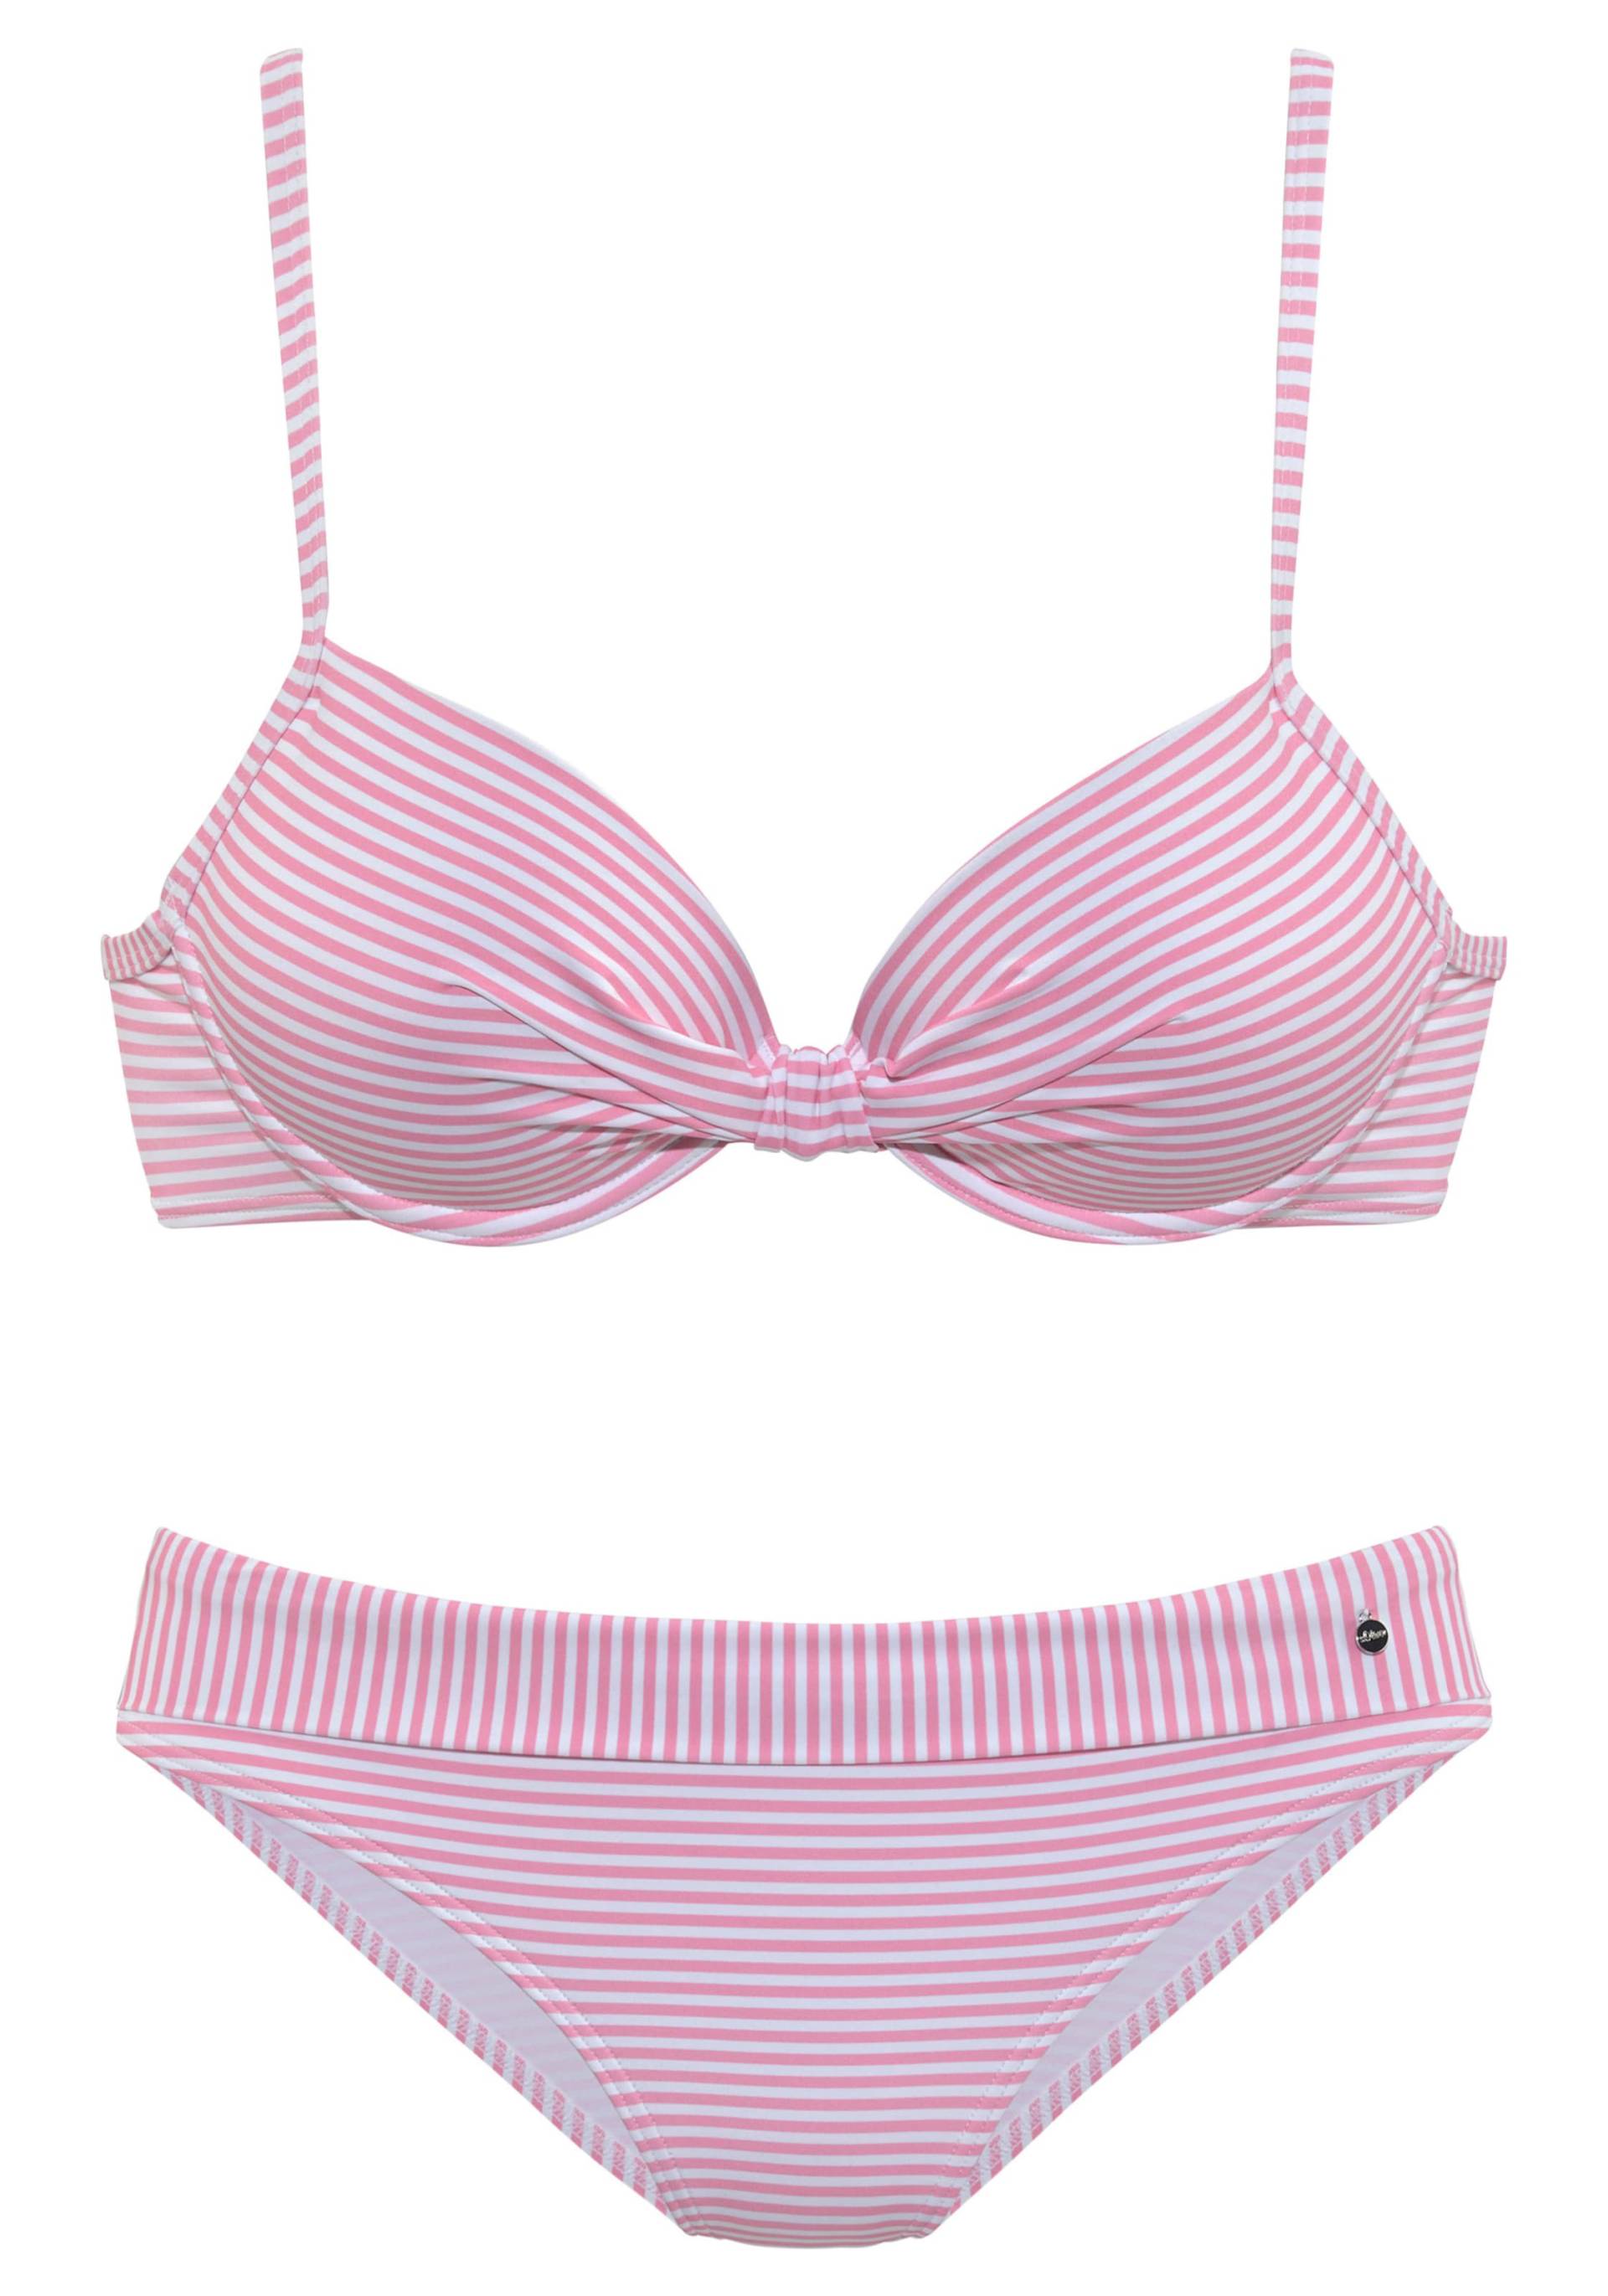 Bügel-Bikini in rosé-weiss von s.Oliver